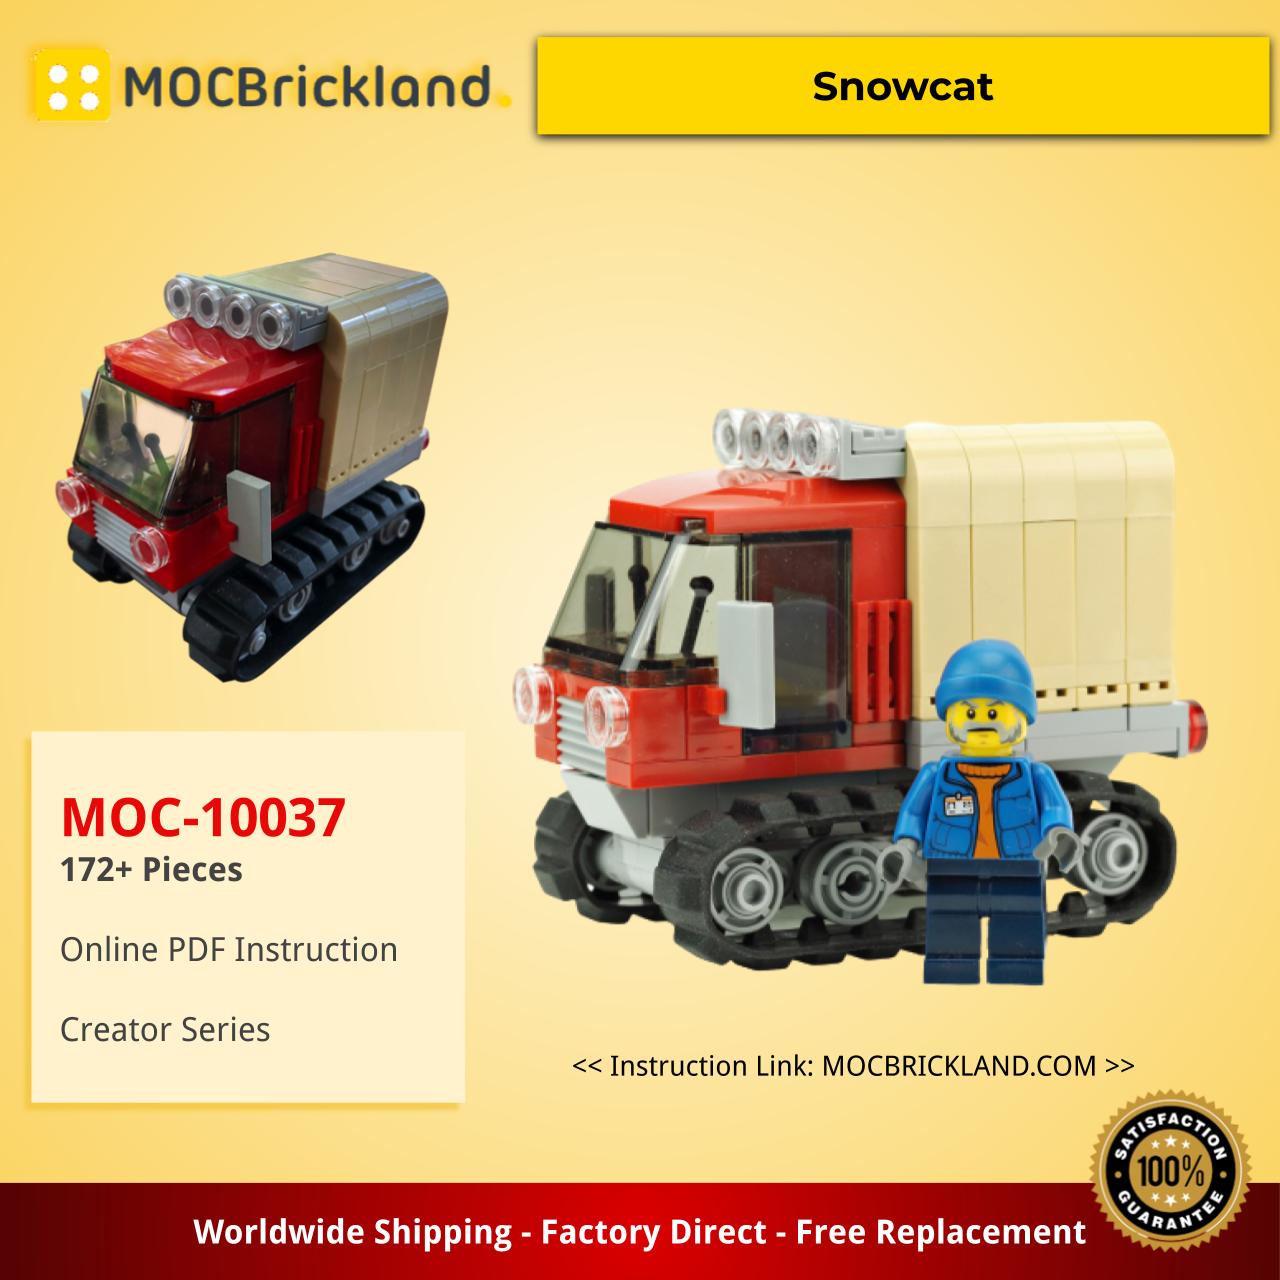 MOCBRICKLAND MOC-10037 Snowcat